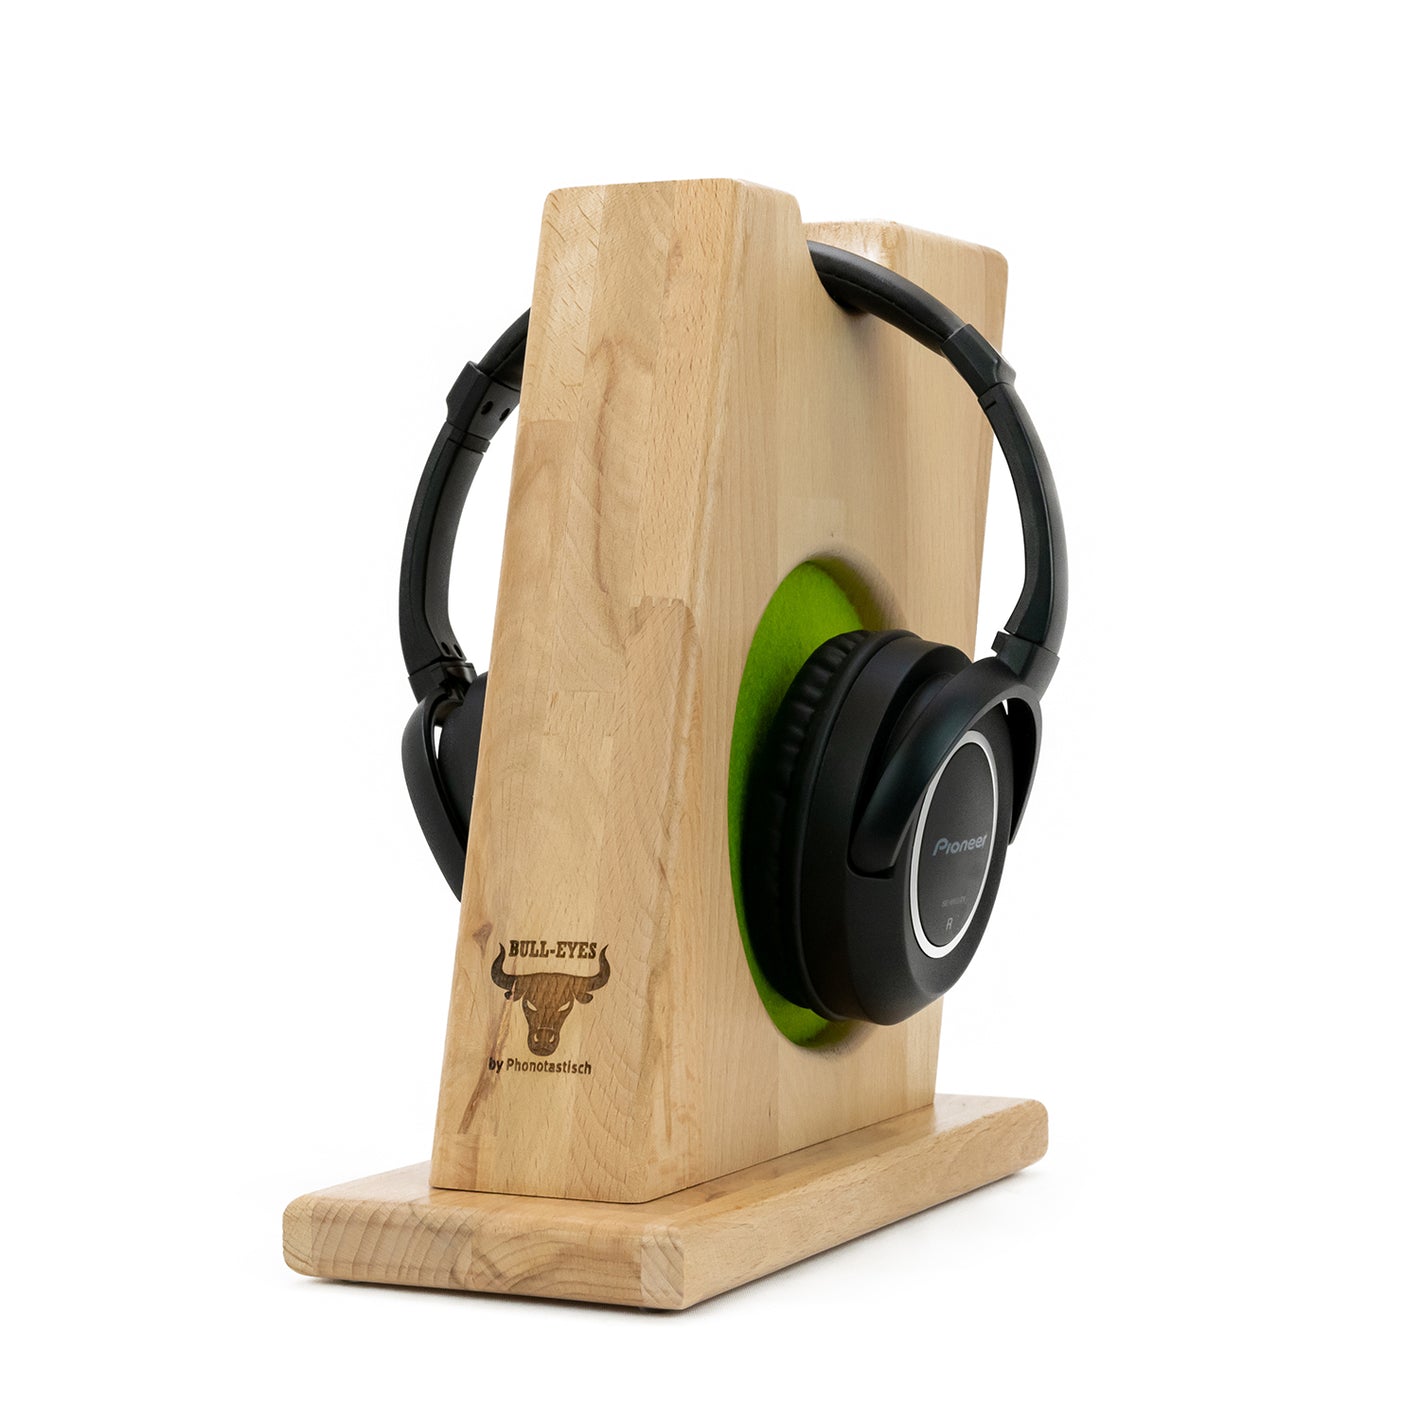 Kopfhörerständer BULL-EYES aus Massivholz Buche mit auswechselbarem Ohrpolsterschutz.